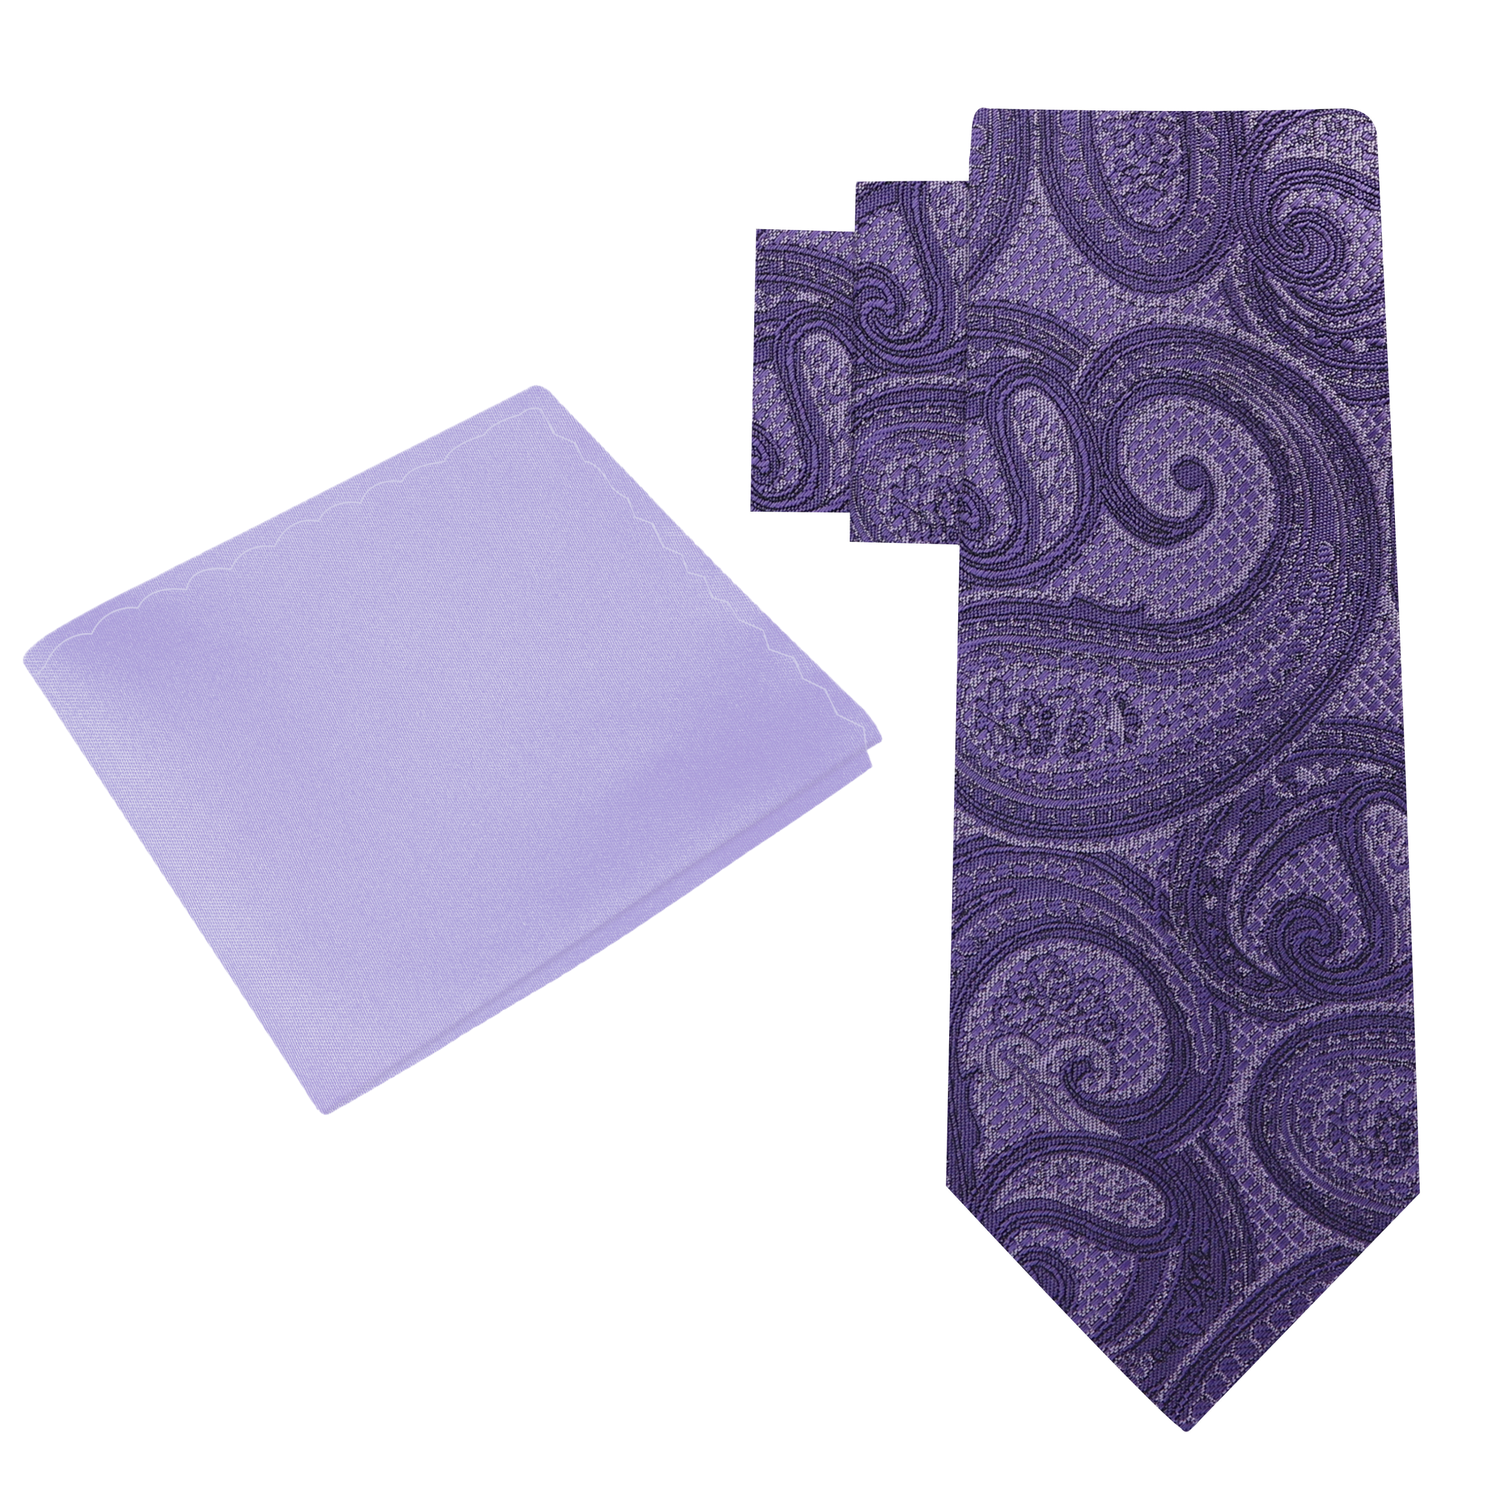 Alt View: Purple Paisley Necktie and Light Purple Square